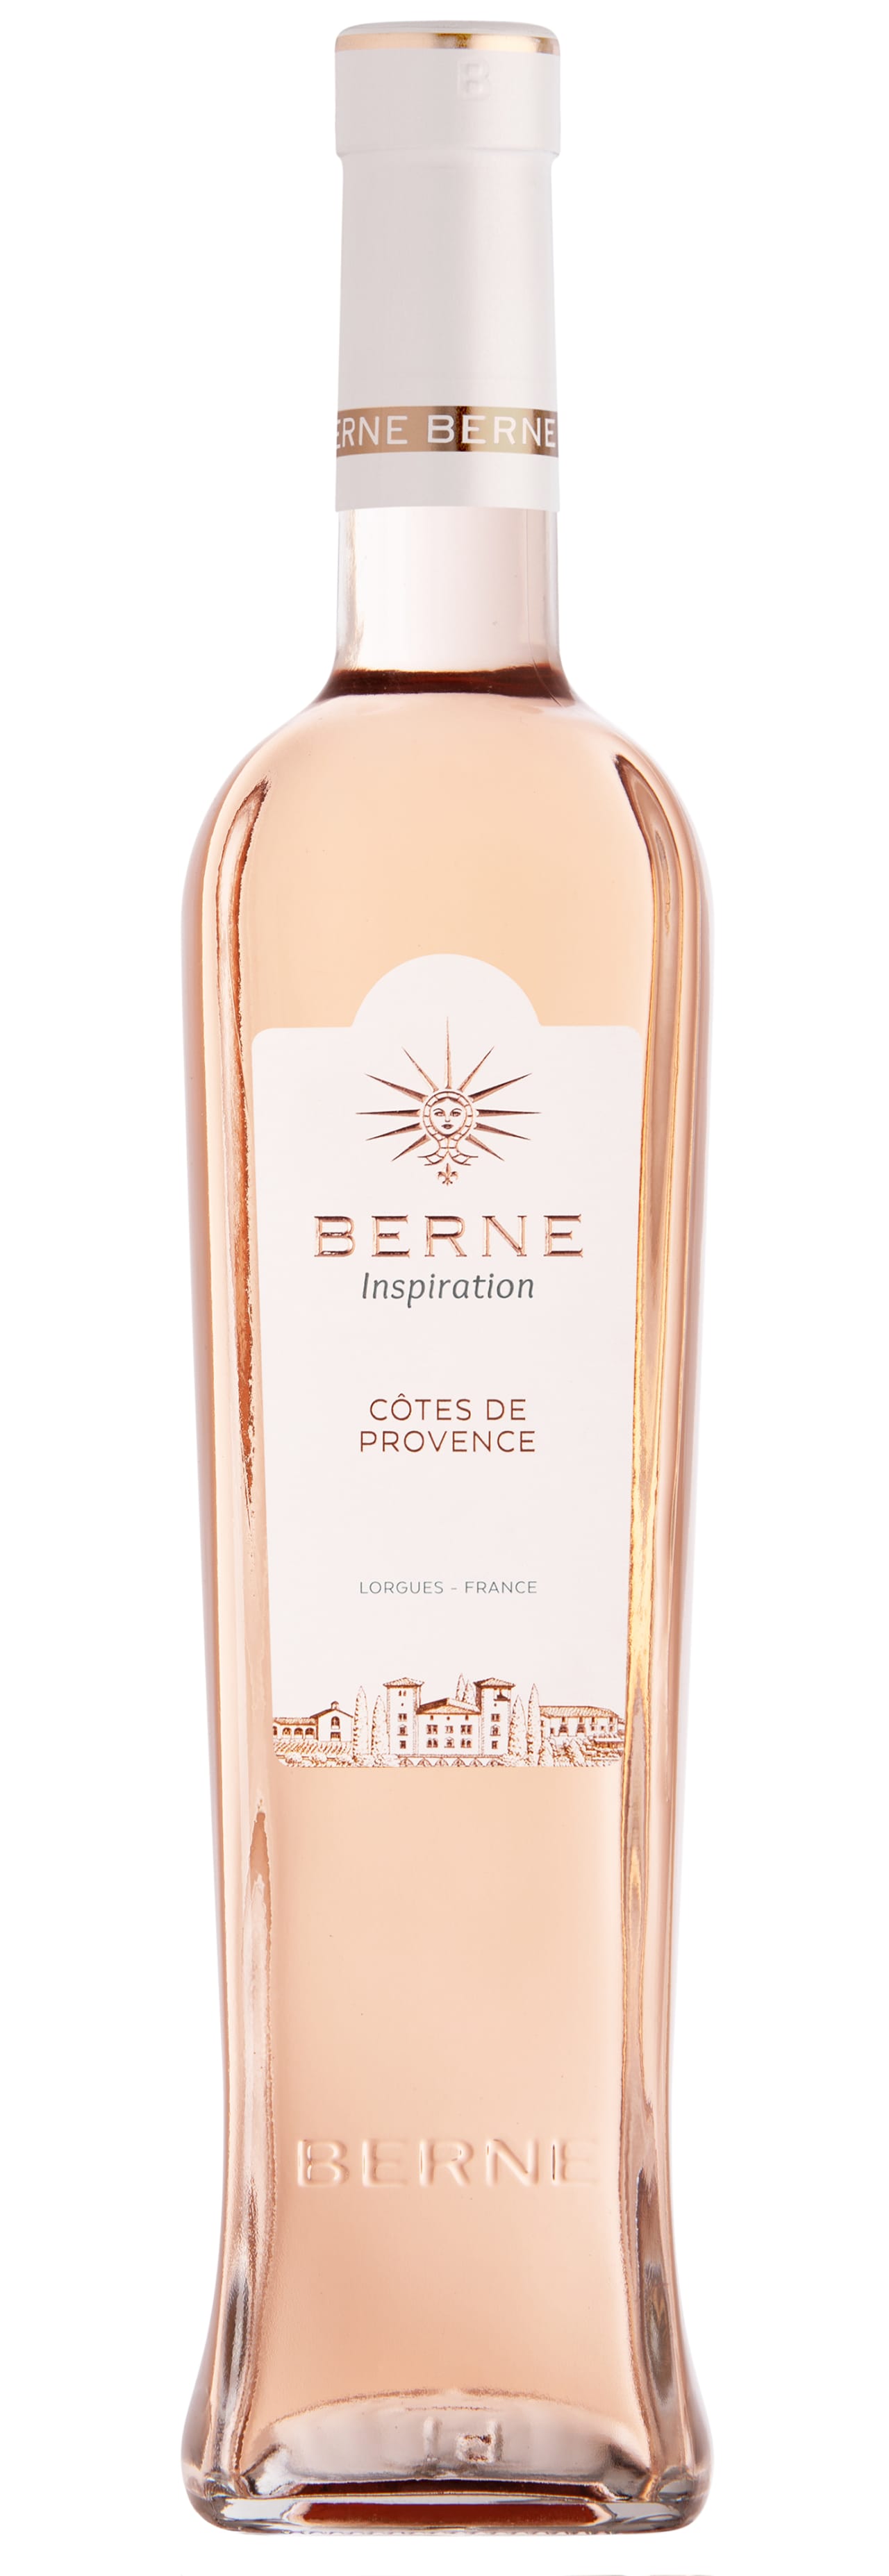 Chateau de Berne Cotes de Provence Rose Inspiration 2019